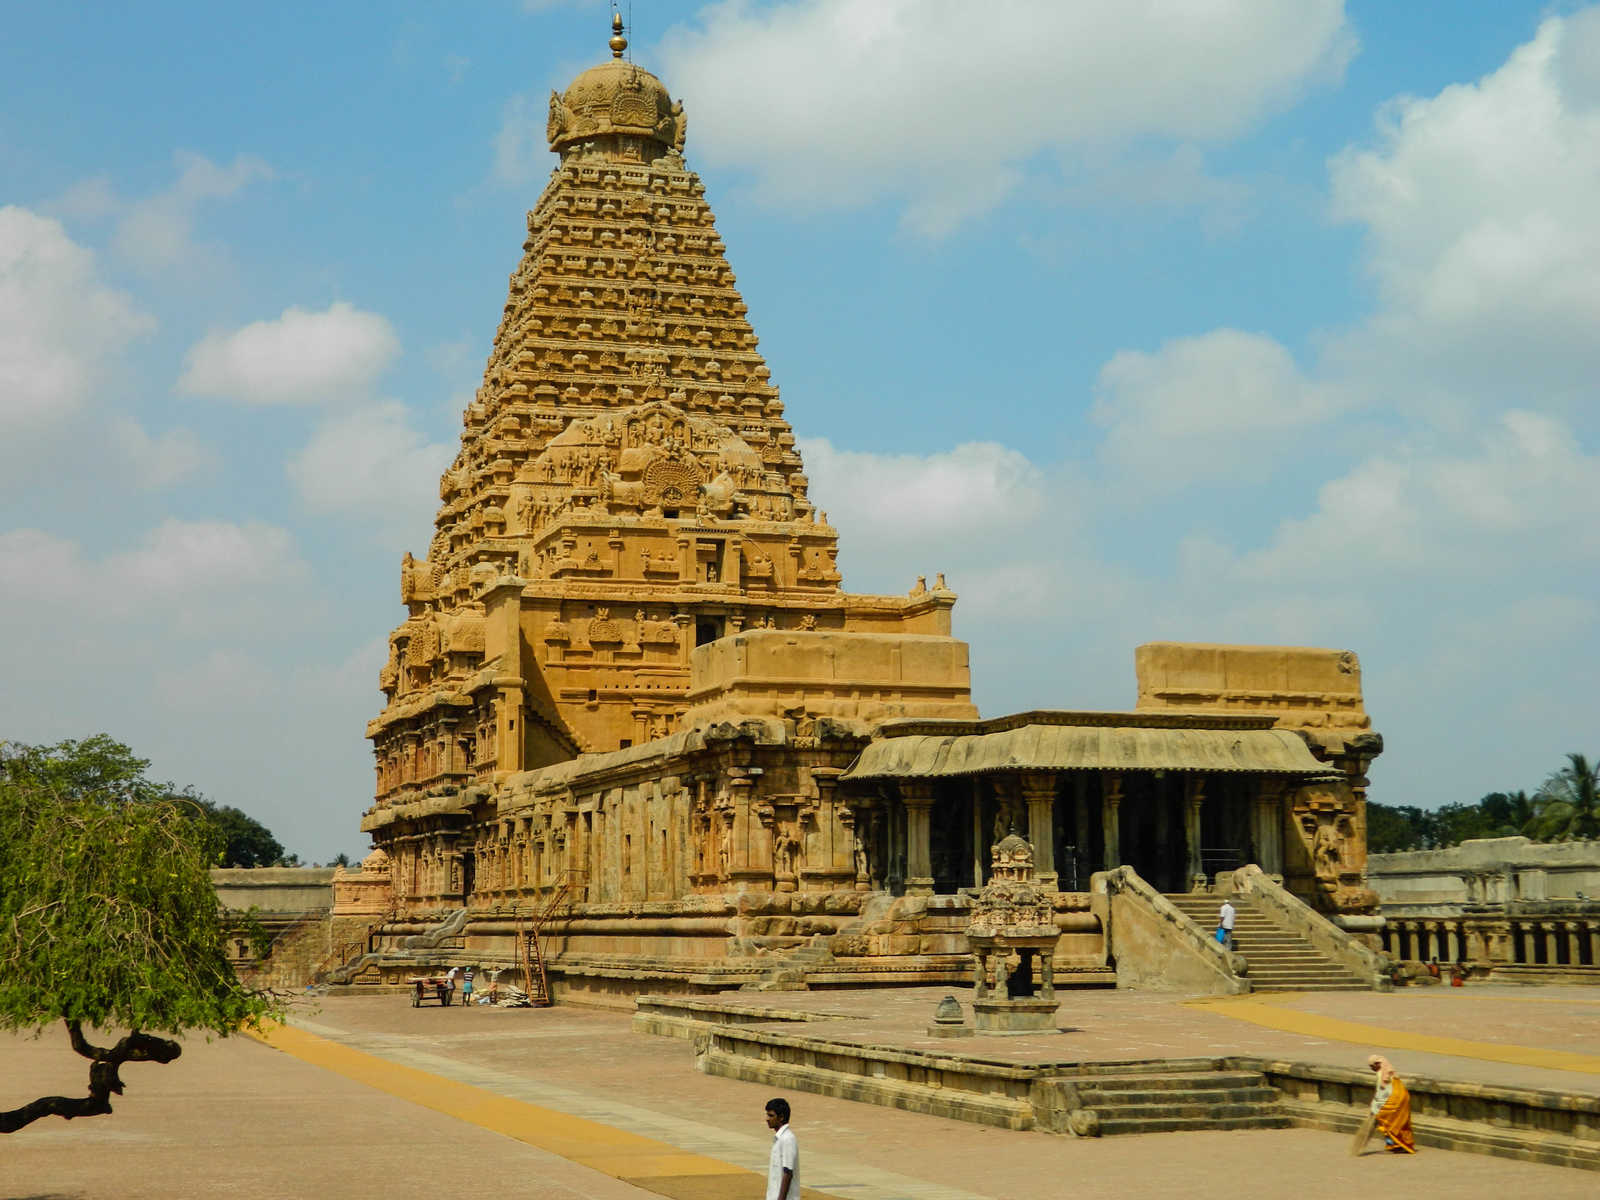 Image Montagnes et temples du Tamil Nadu et lagons du Kerala